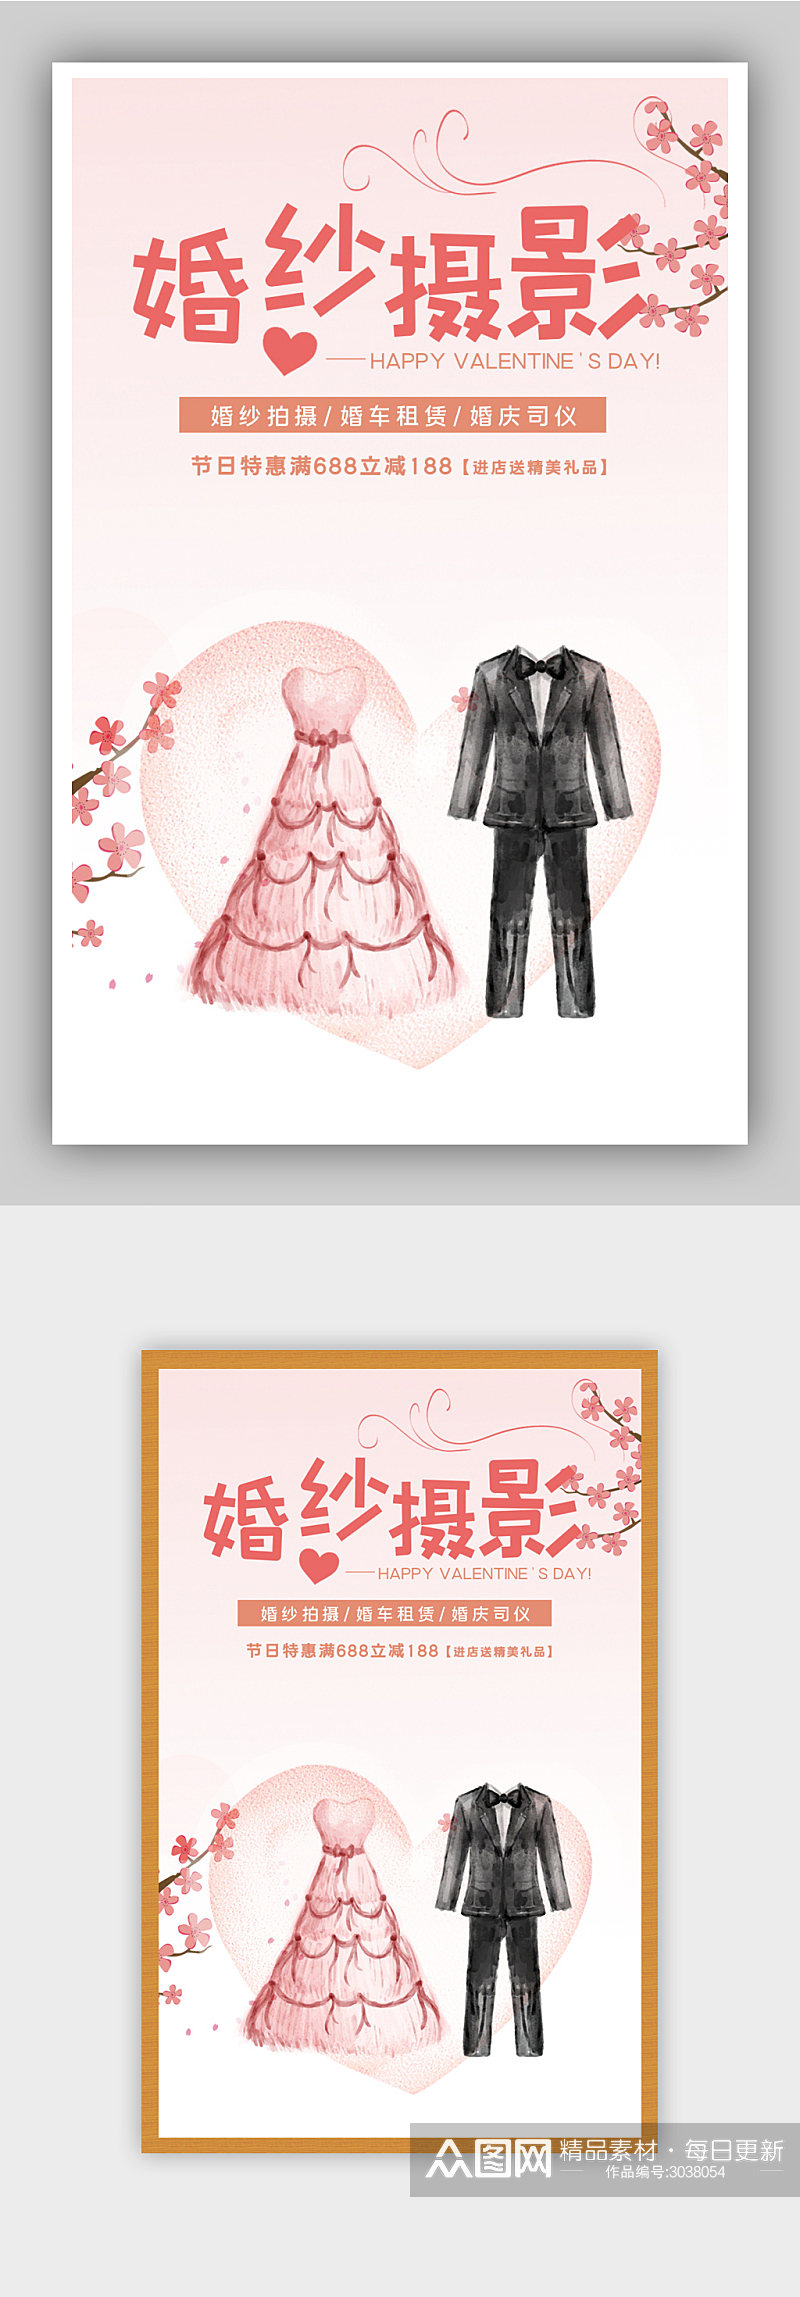 粉色浪漫婚纱摄影电商背景海报素材